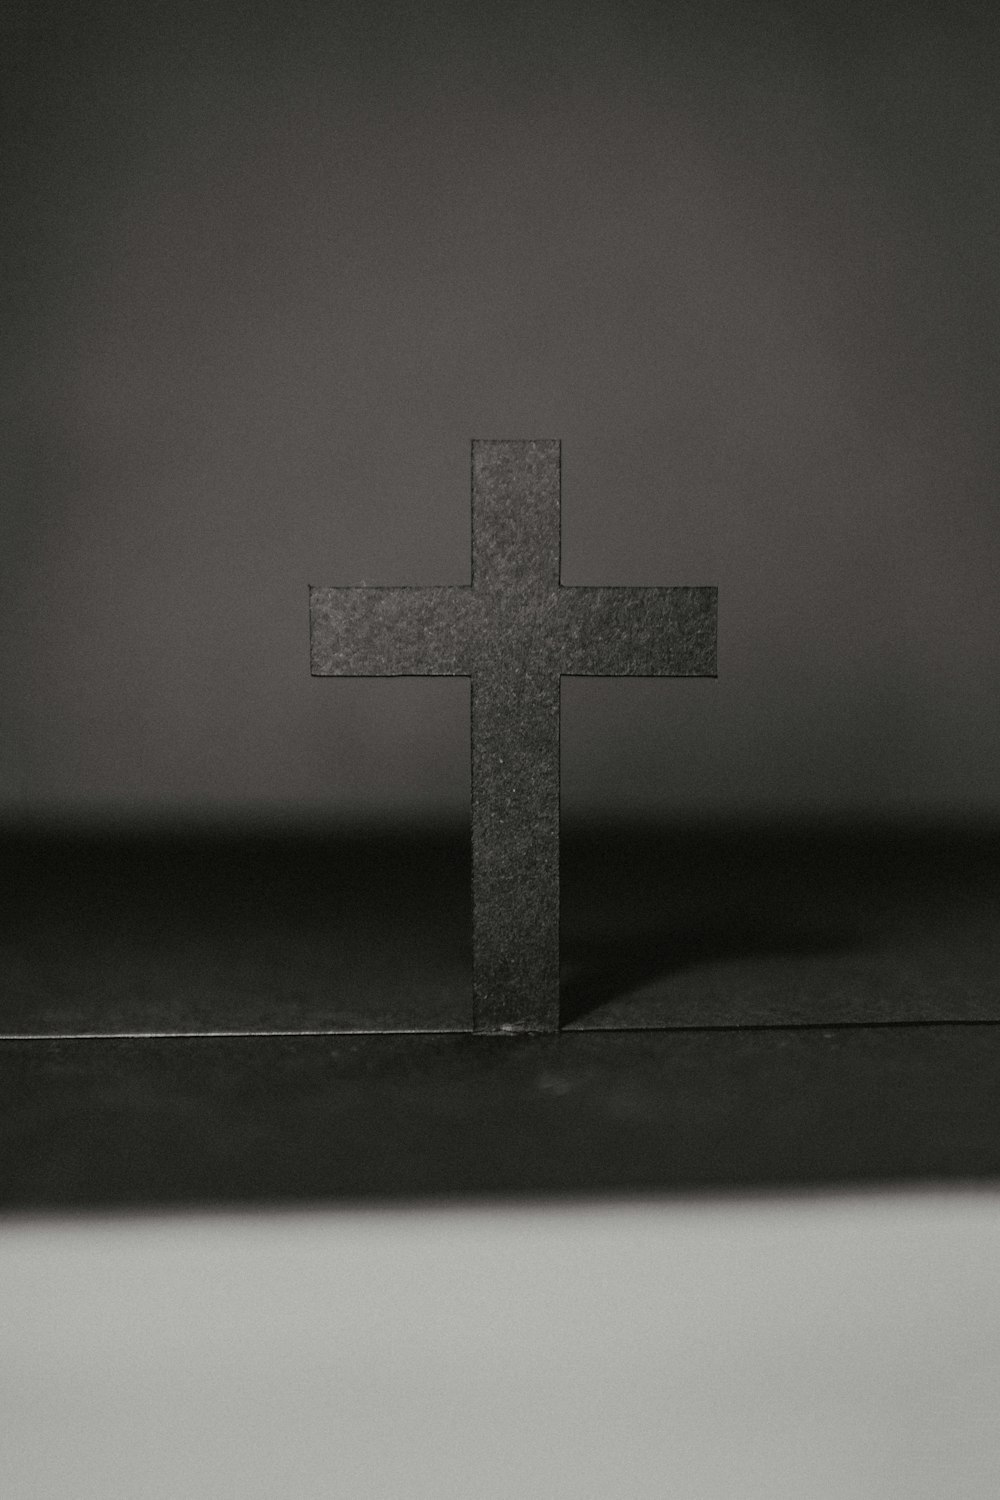 テーブル上の十字架のグレースケール写真